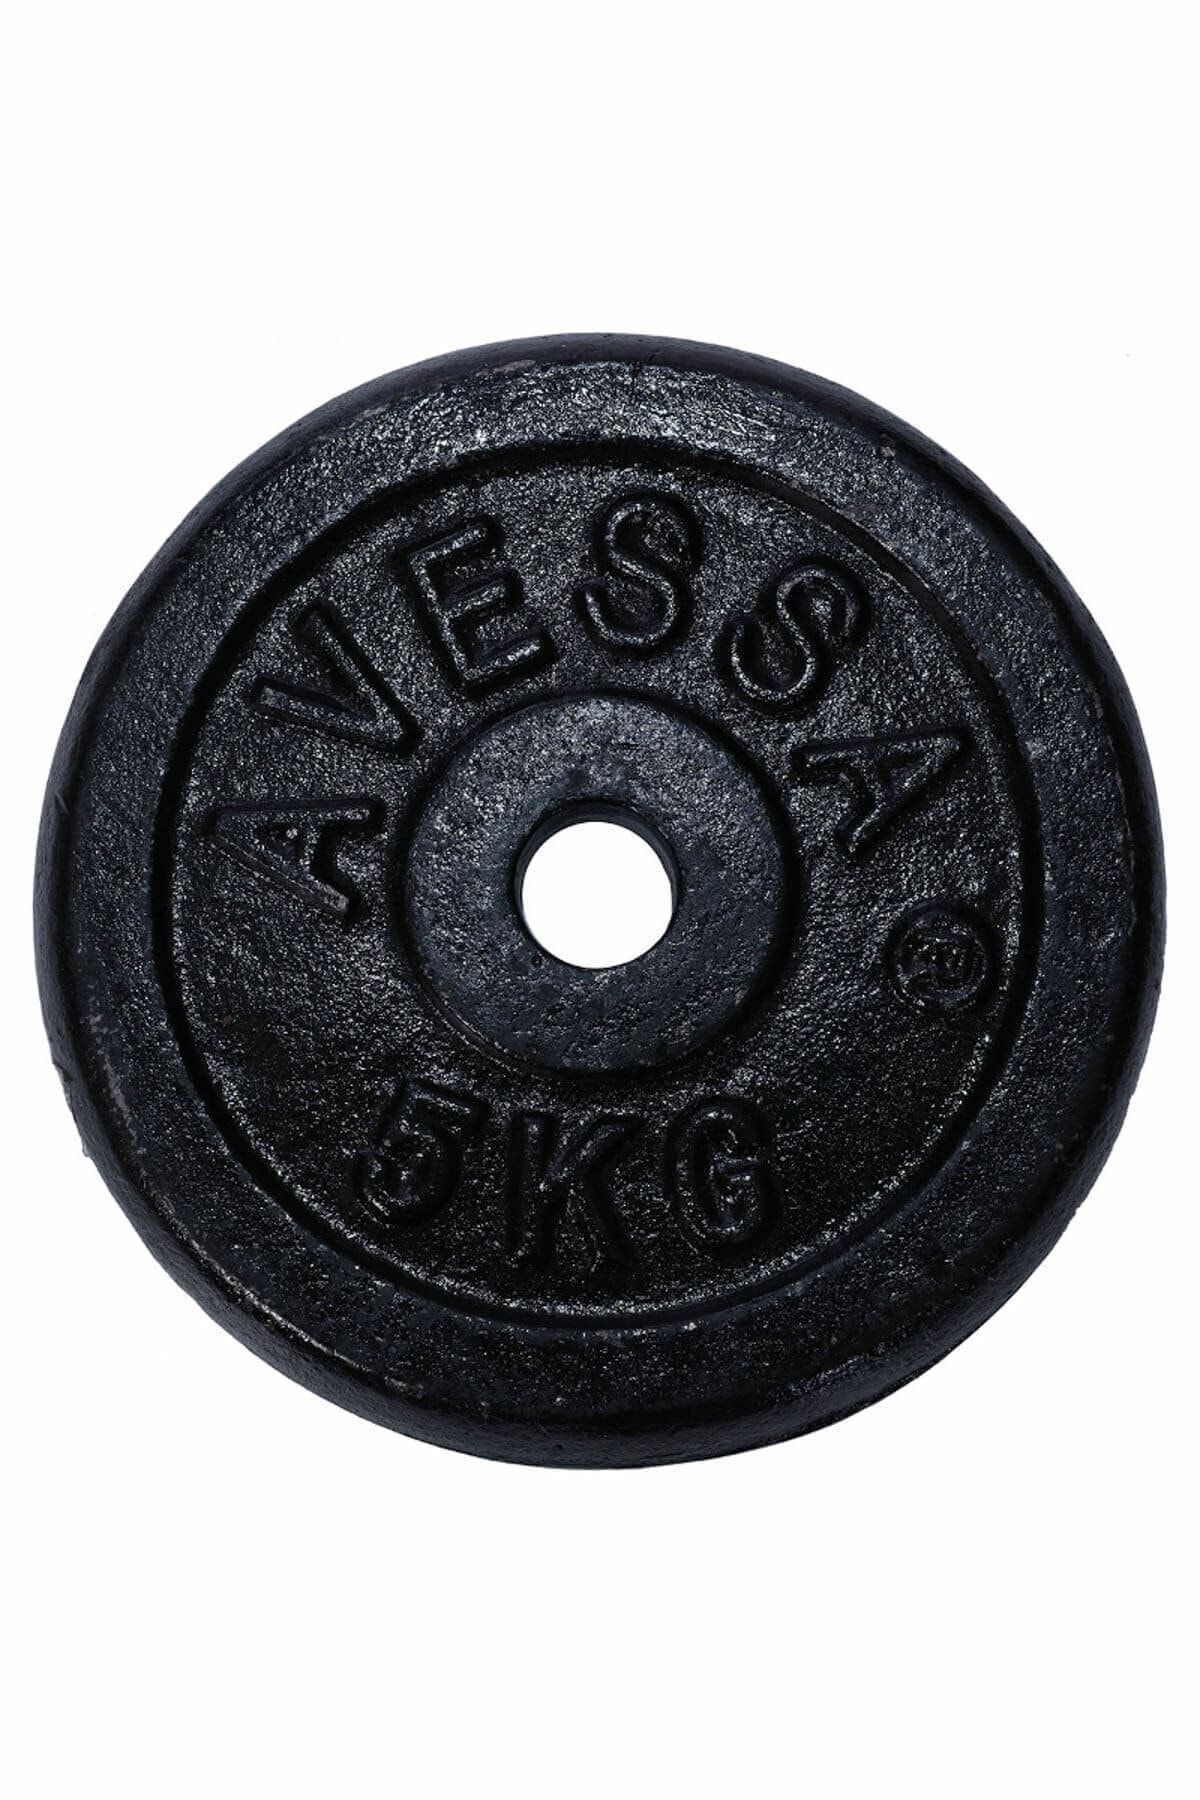 Avessa Siyah Avessa Plaka 5 kg 2016090207